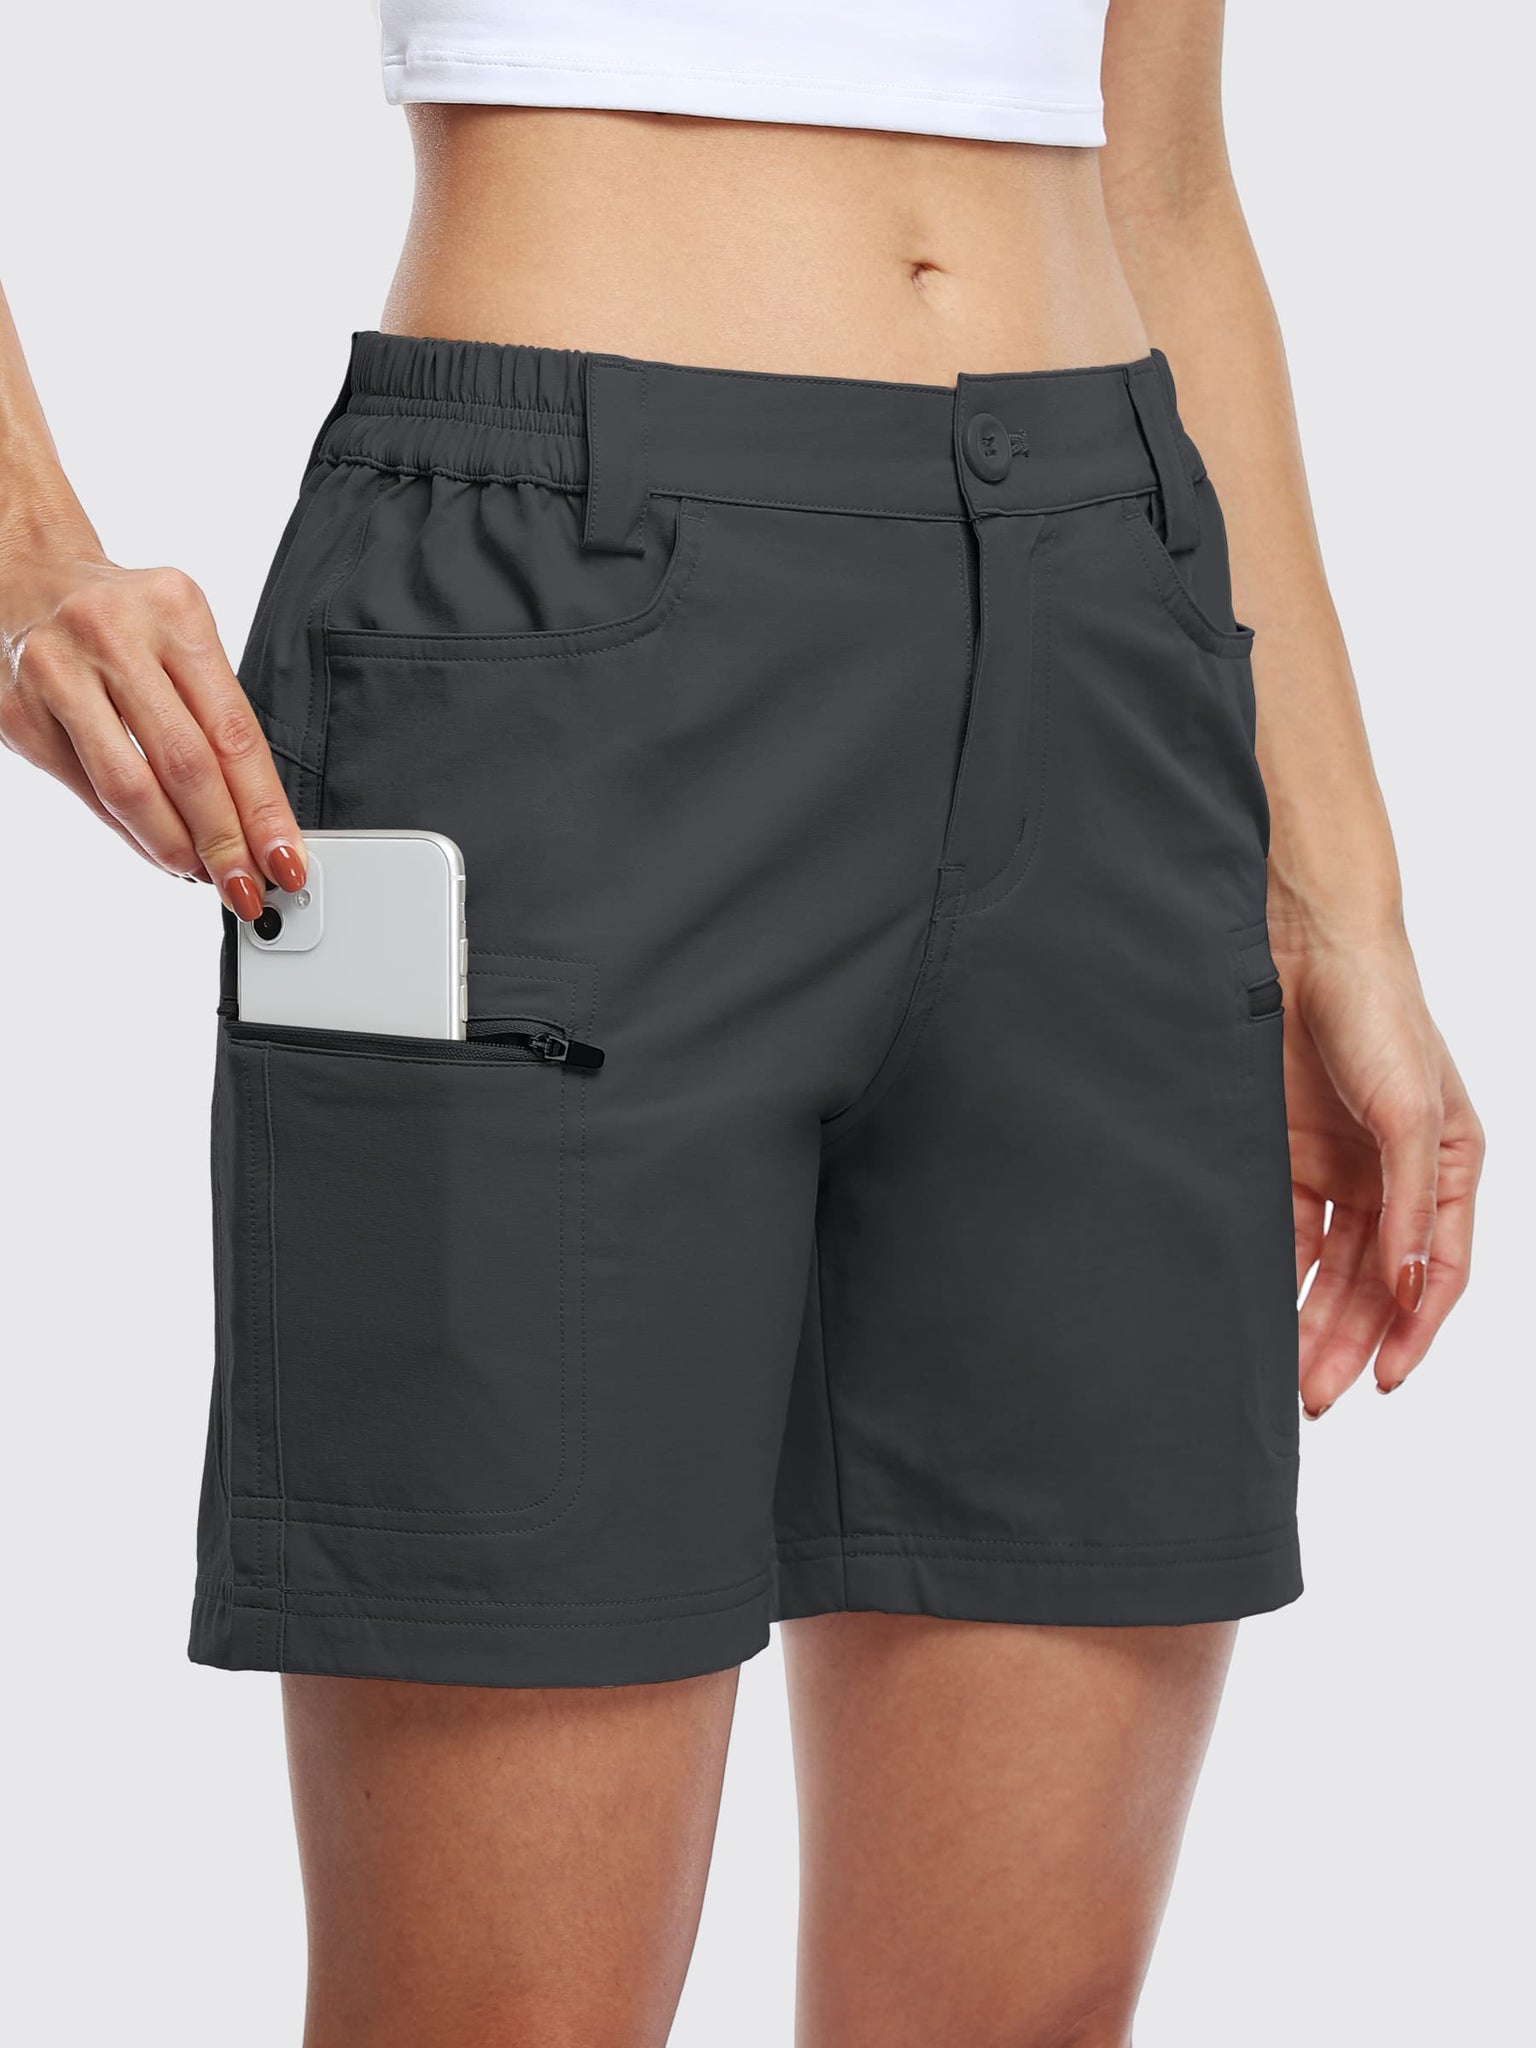 Willit Women's Outdoor Cargo Shorts 6 Inseam_DeepGray_model4